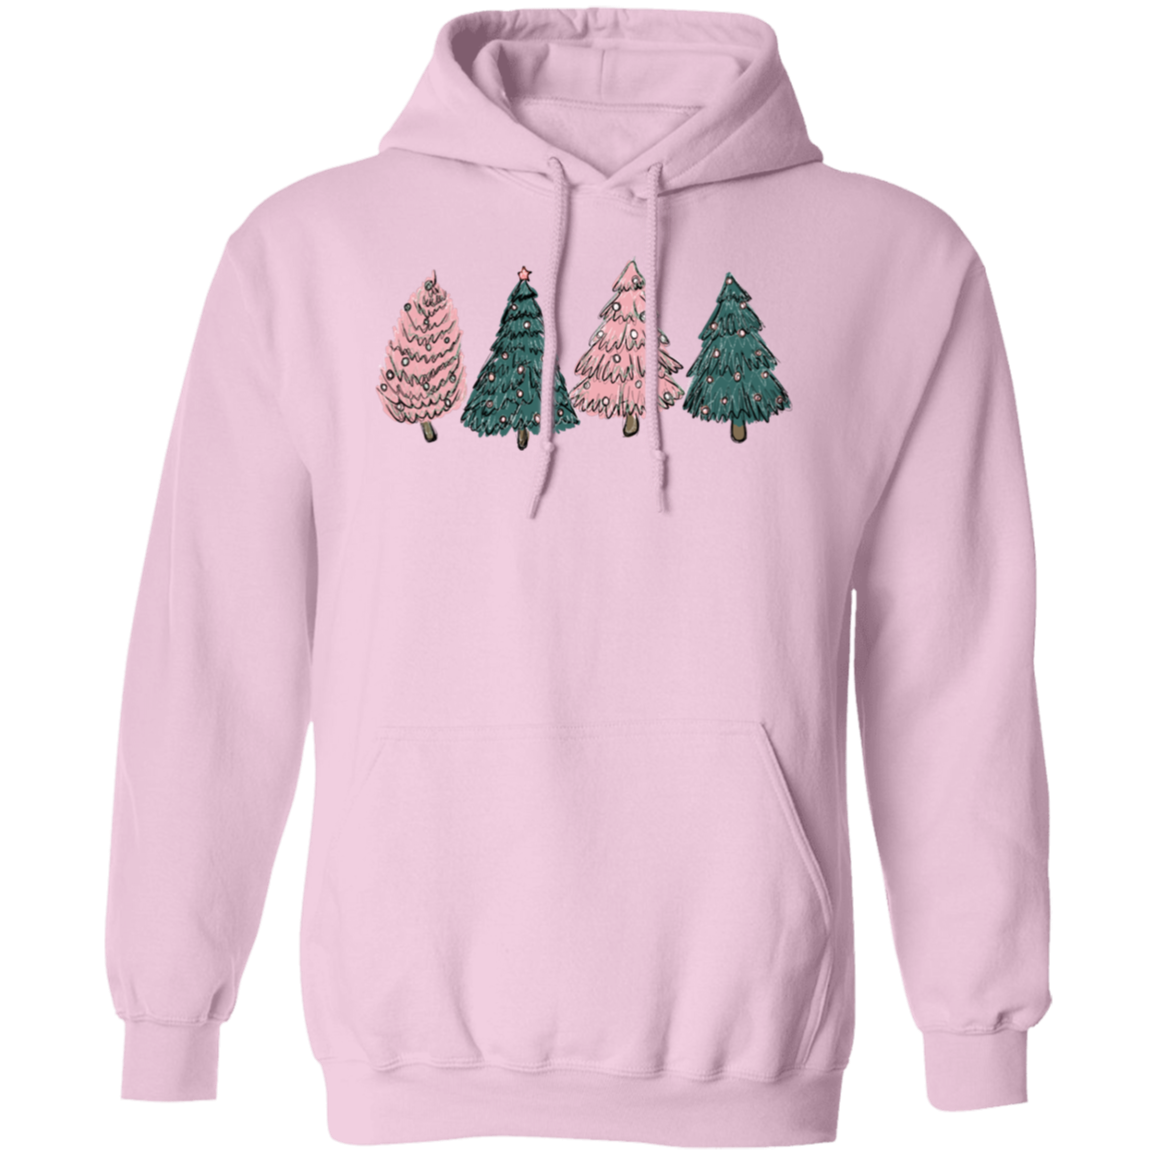 Árboles de Navidad, rosa y verde - Sudadera con capucha unisex